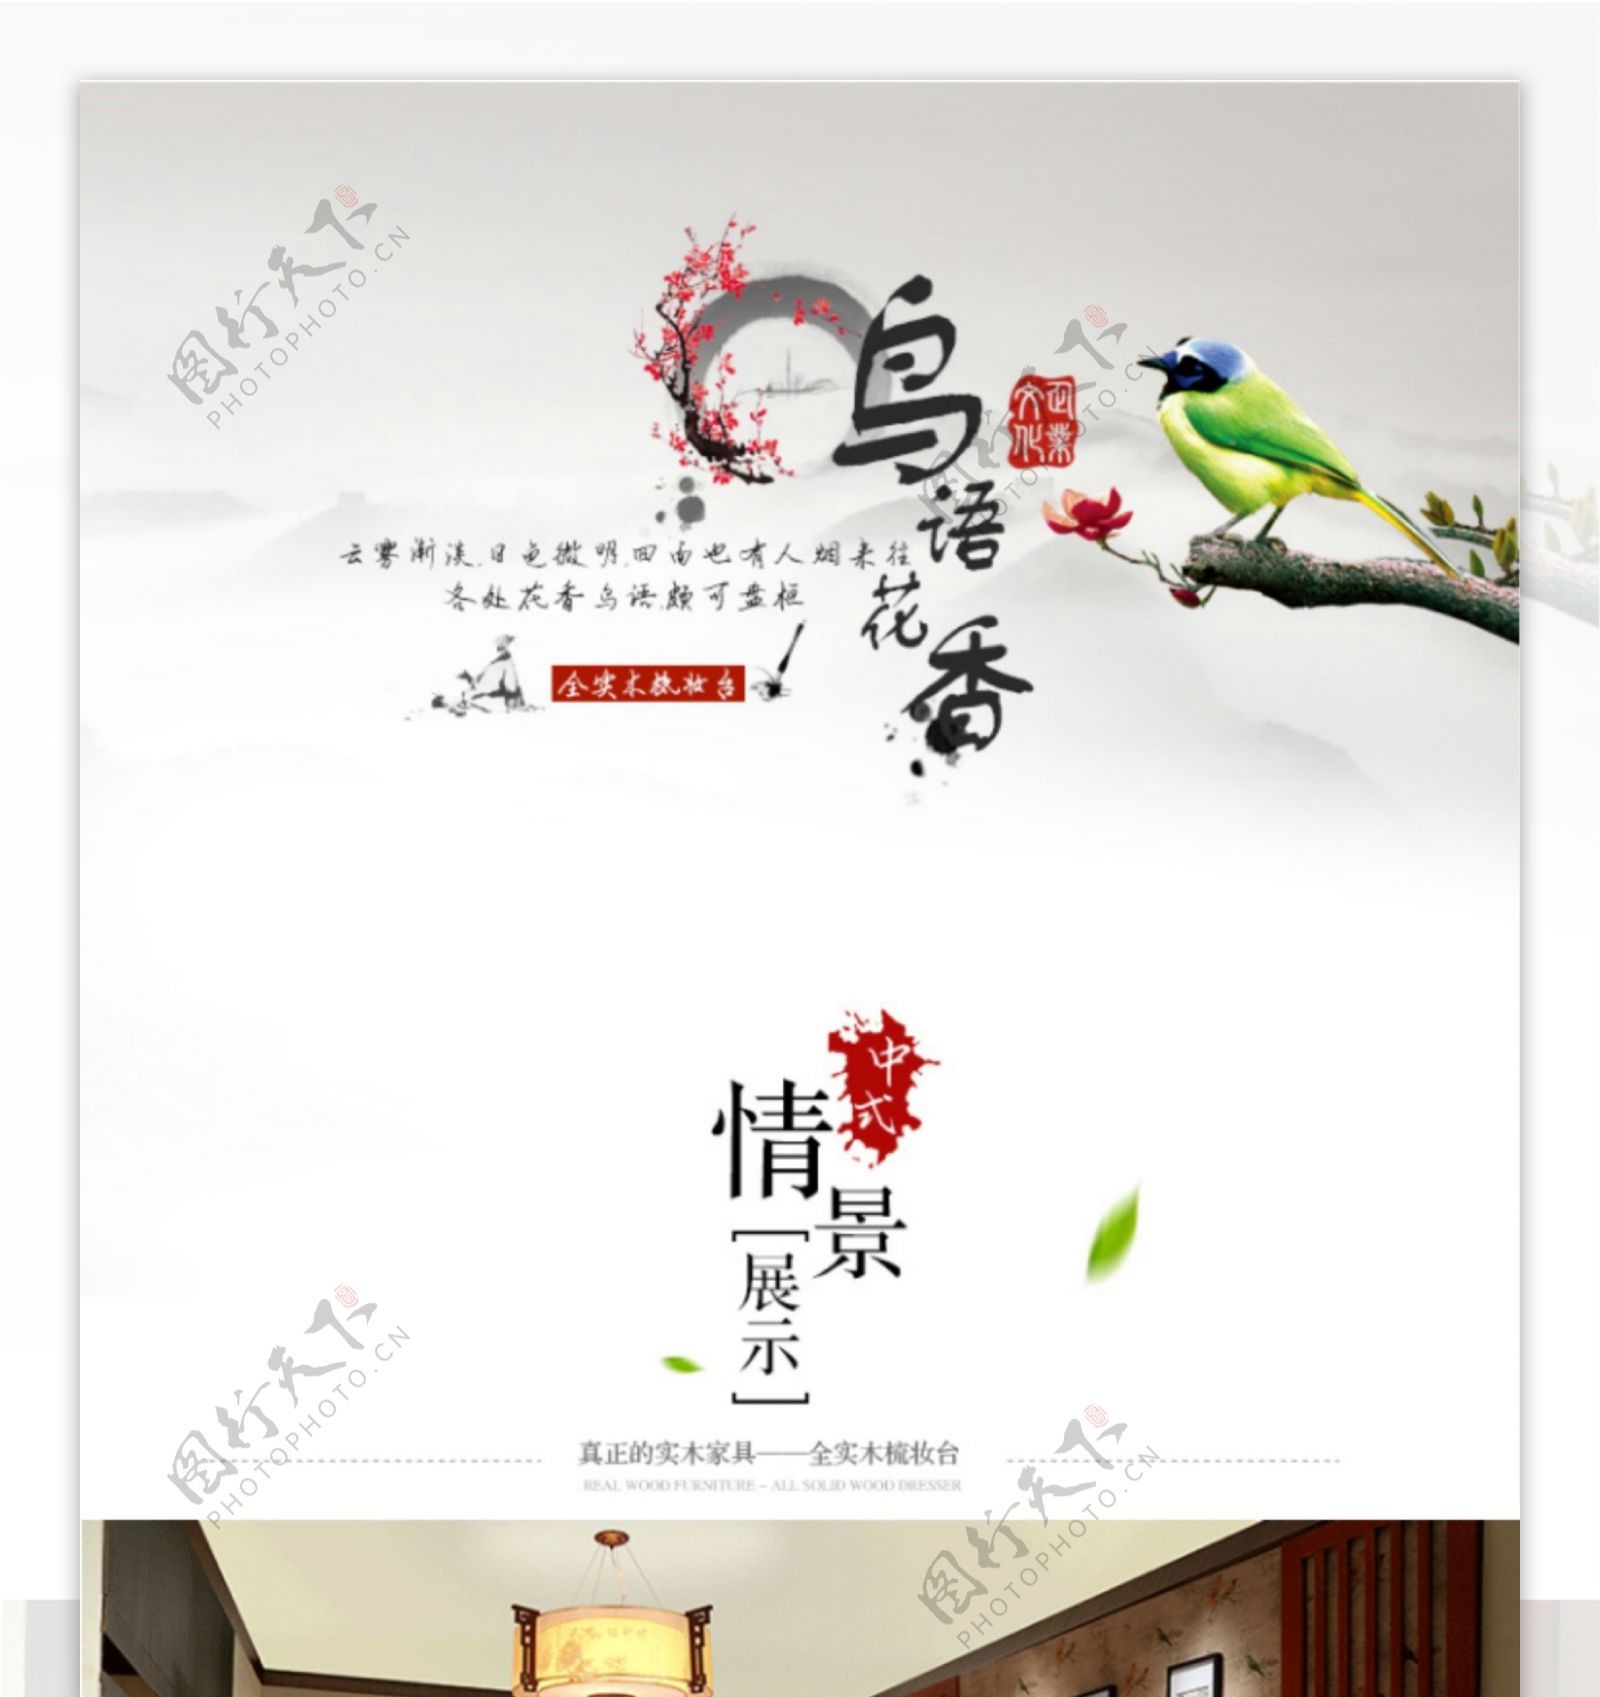 实木梳妆台中式家具详情页中国风